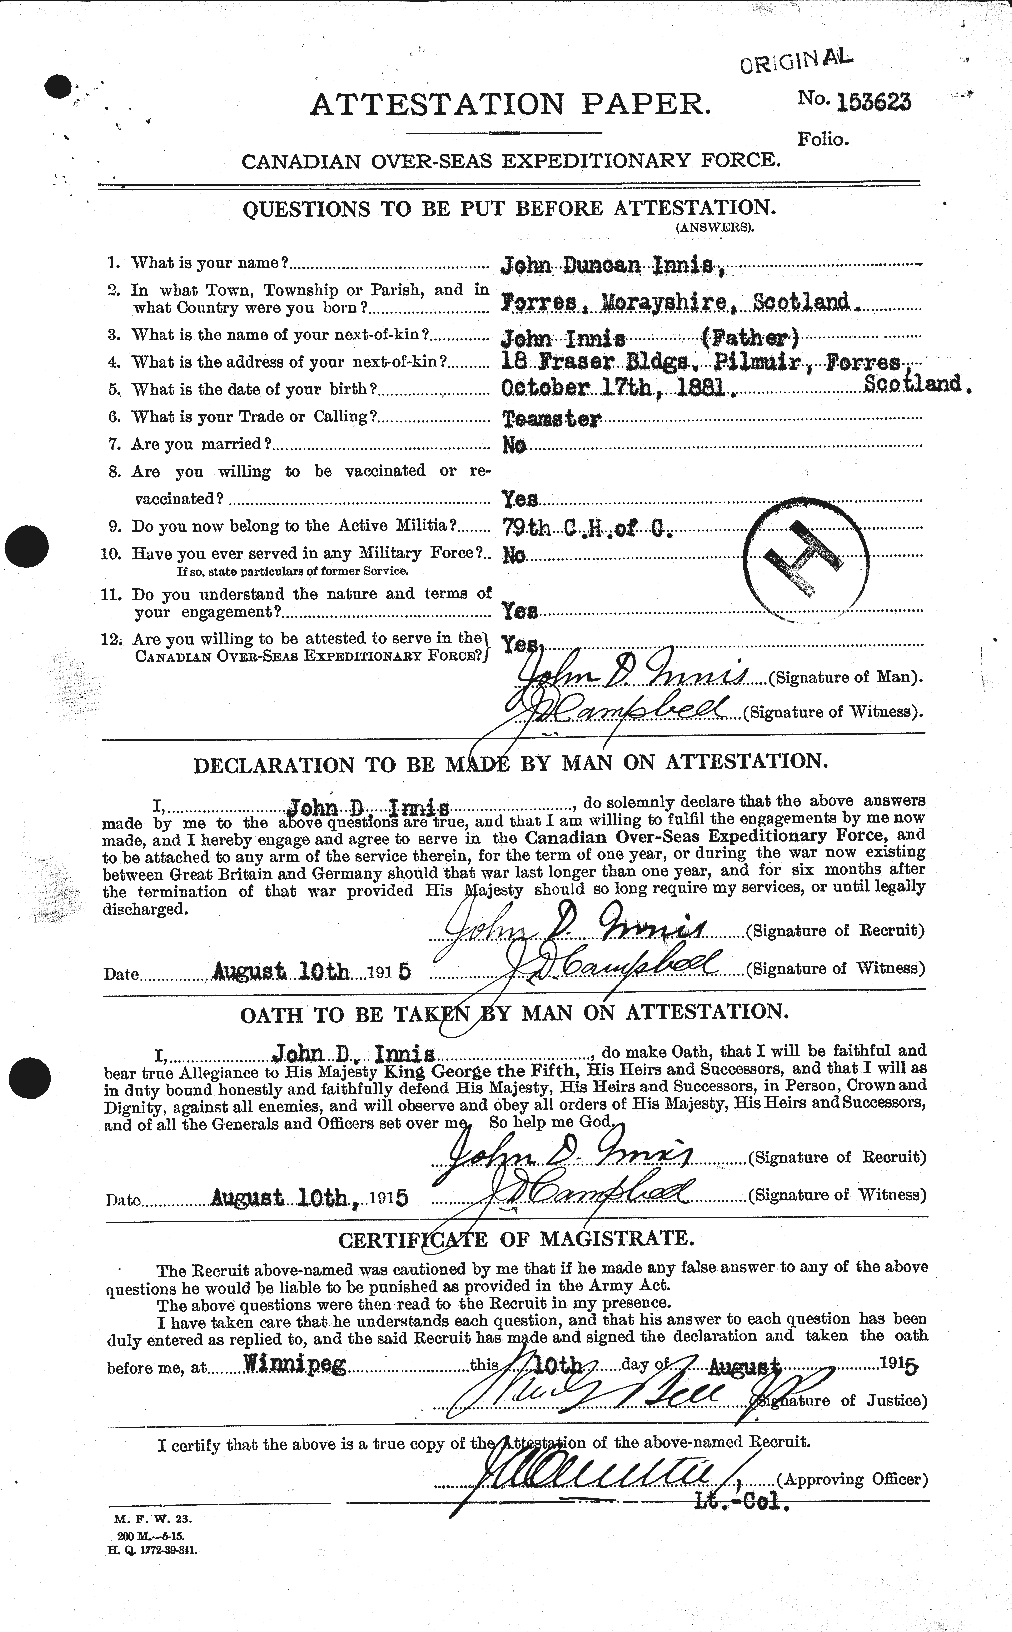 Dossiers du Personnel de la Première Guerre mondiale - CEC 415476a